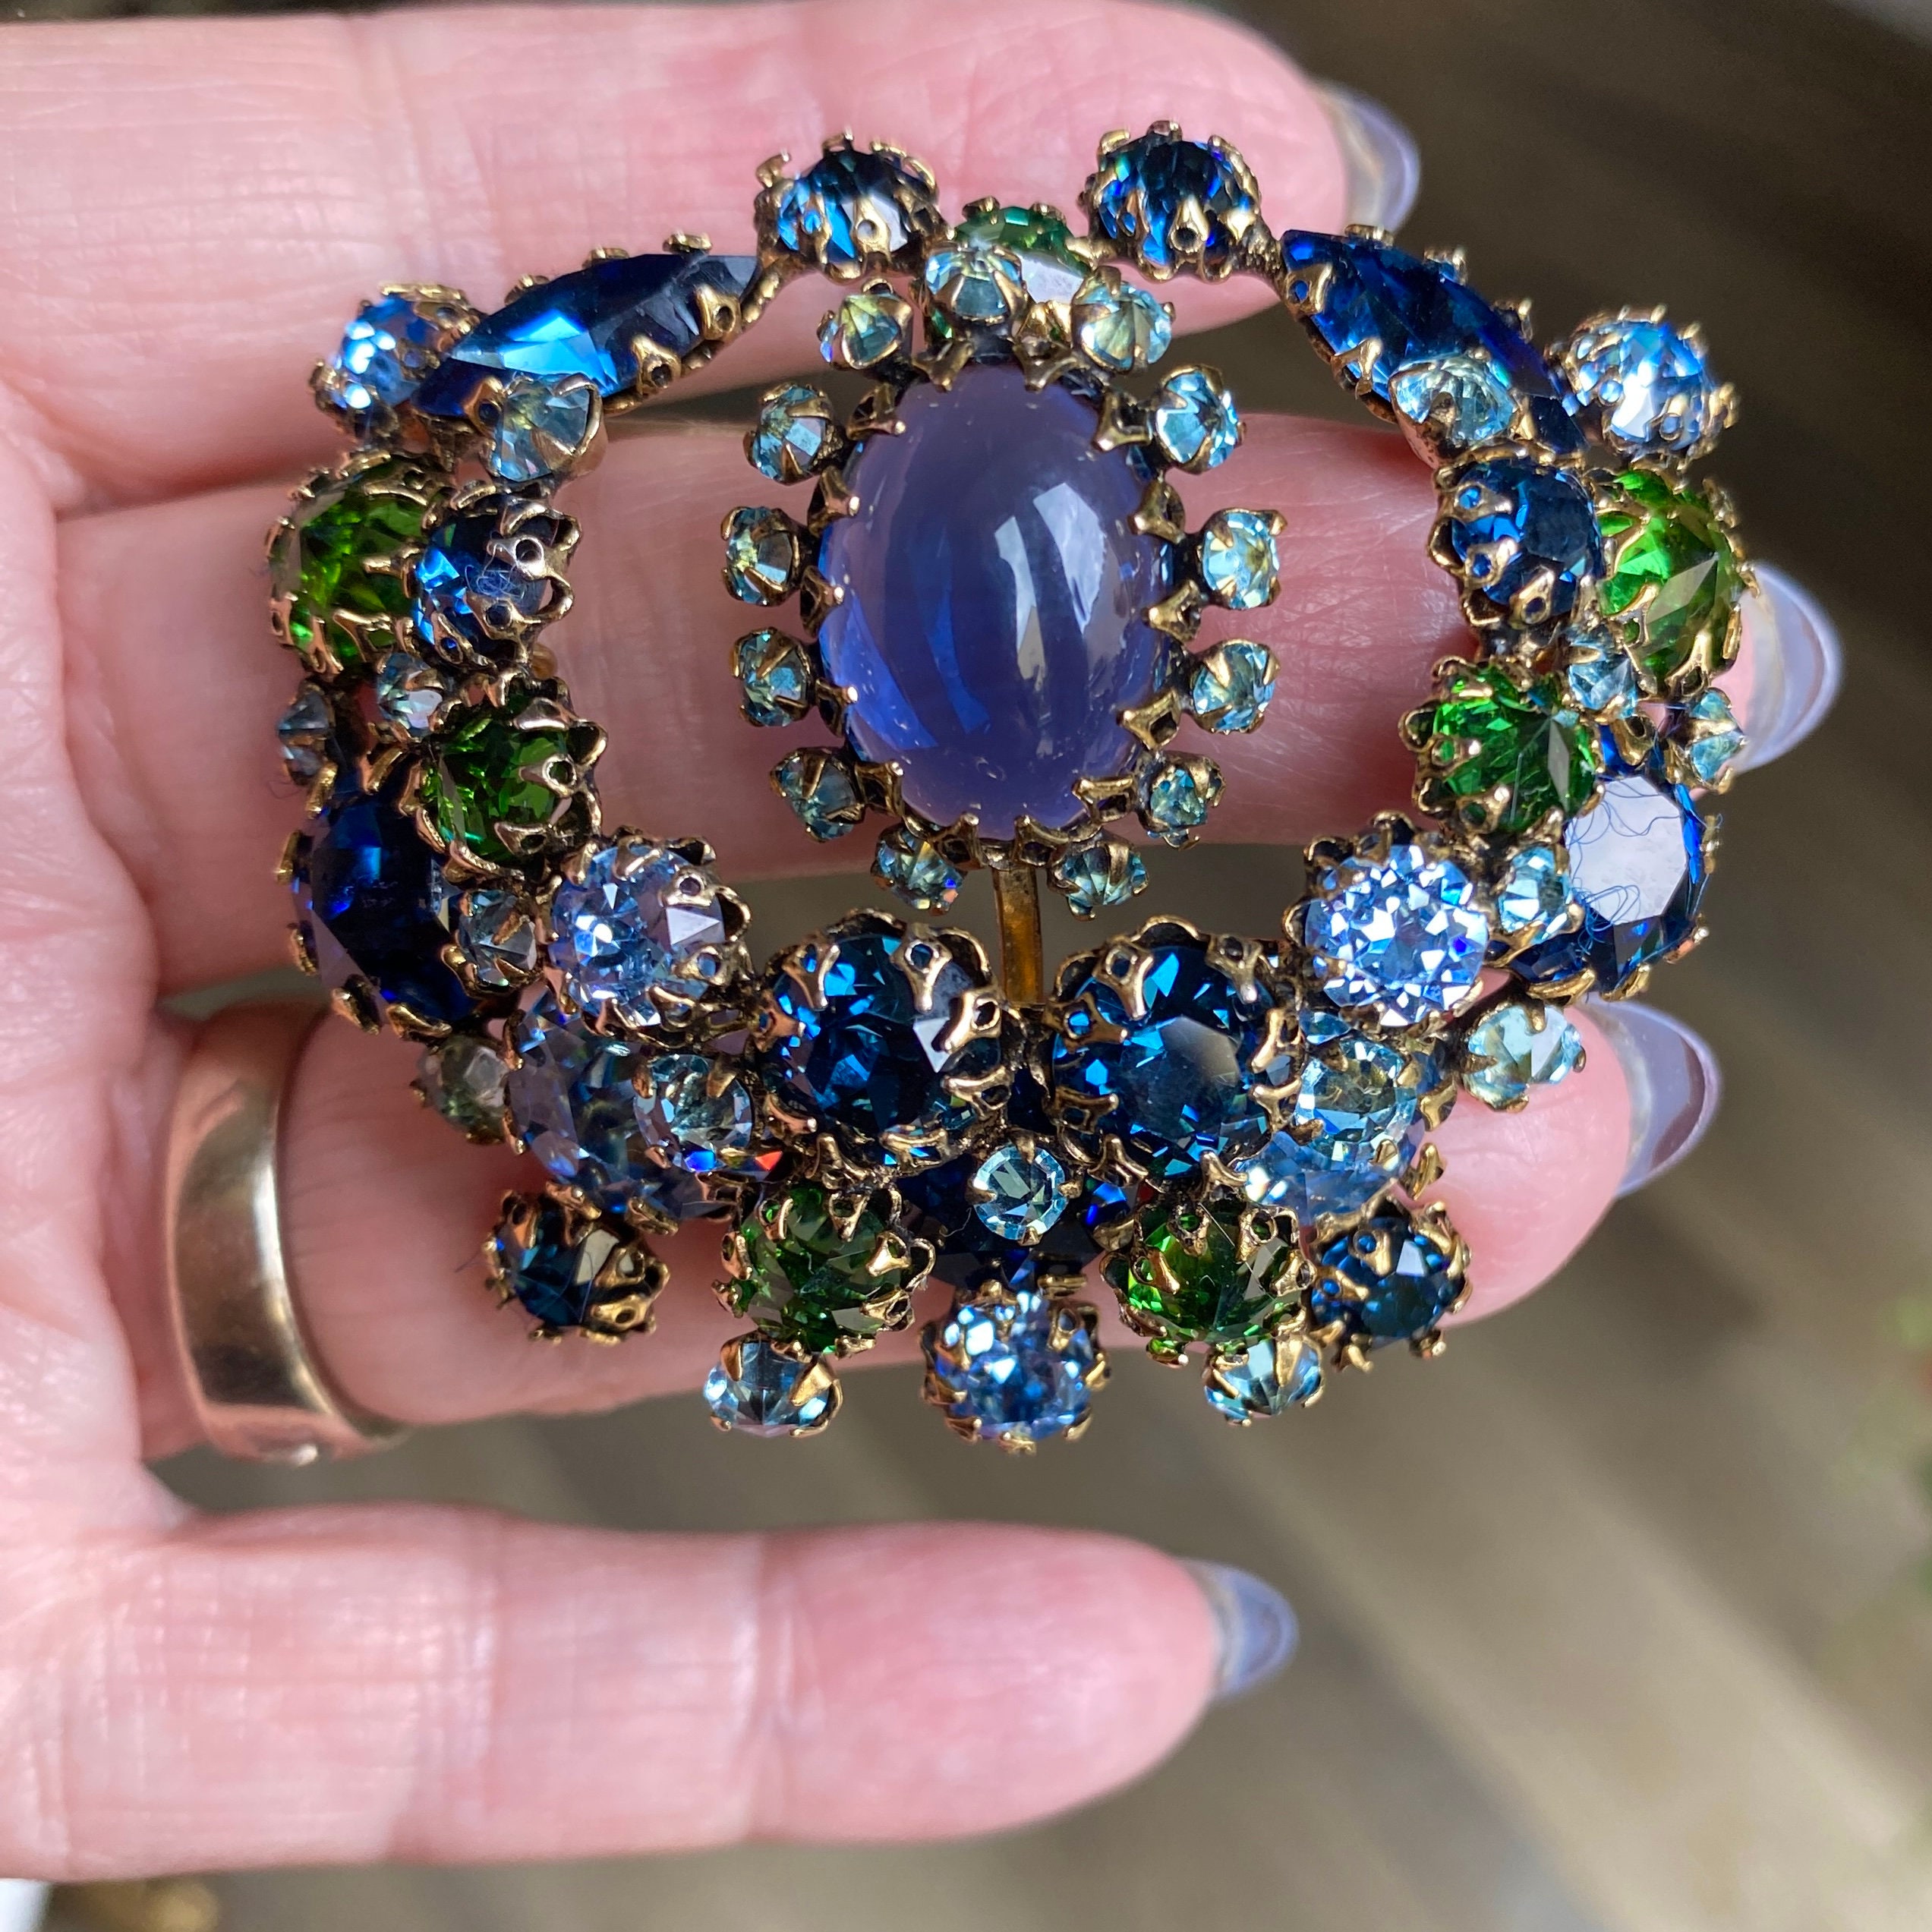 Coro Craft (Jewels) 1948 Necklace, Pin, Photo John Rawlings